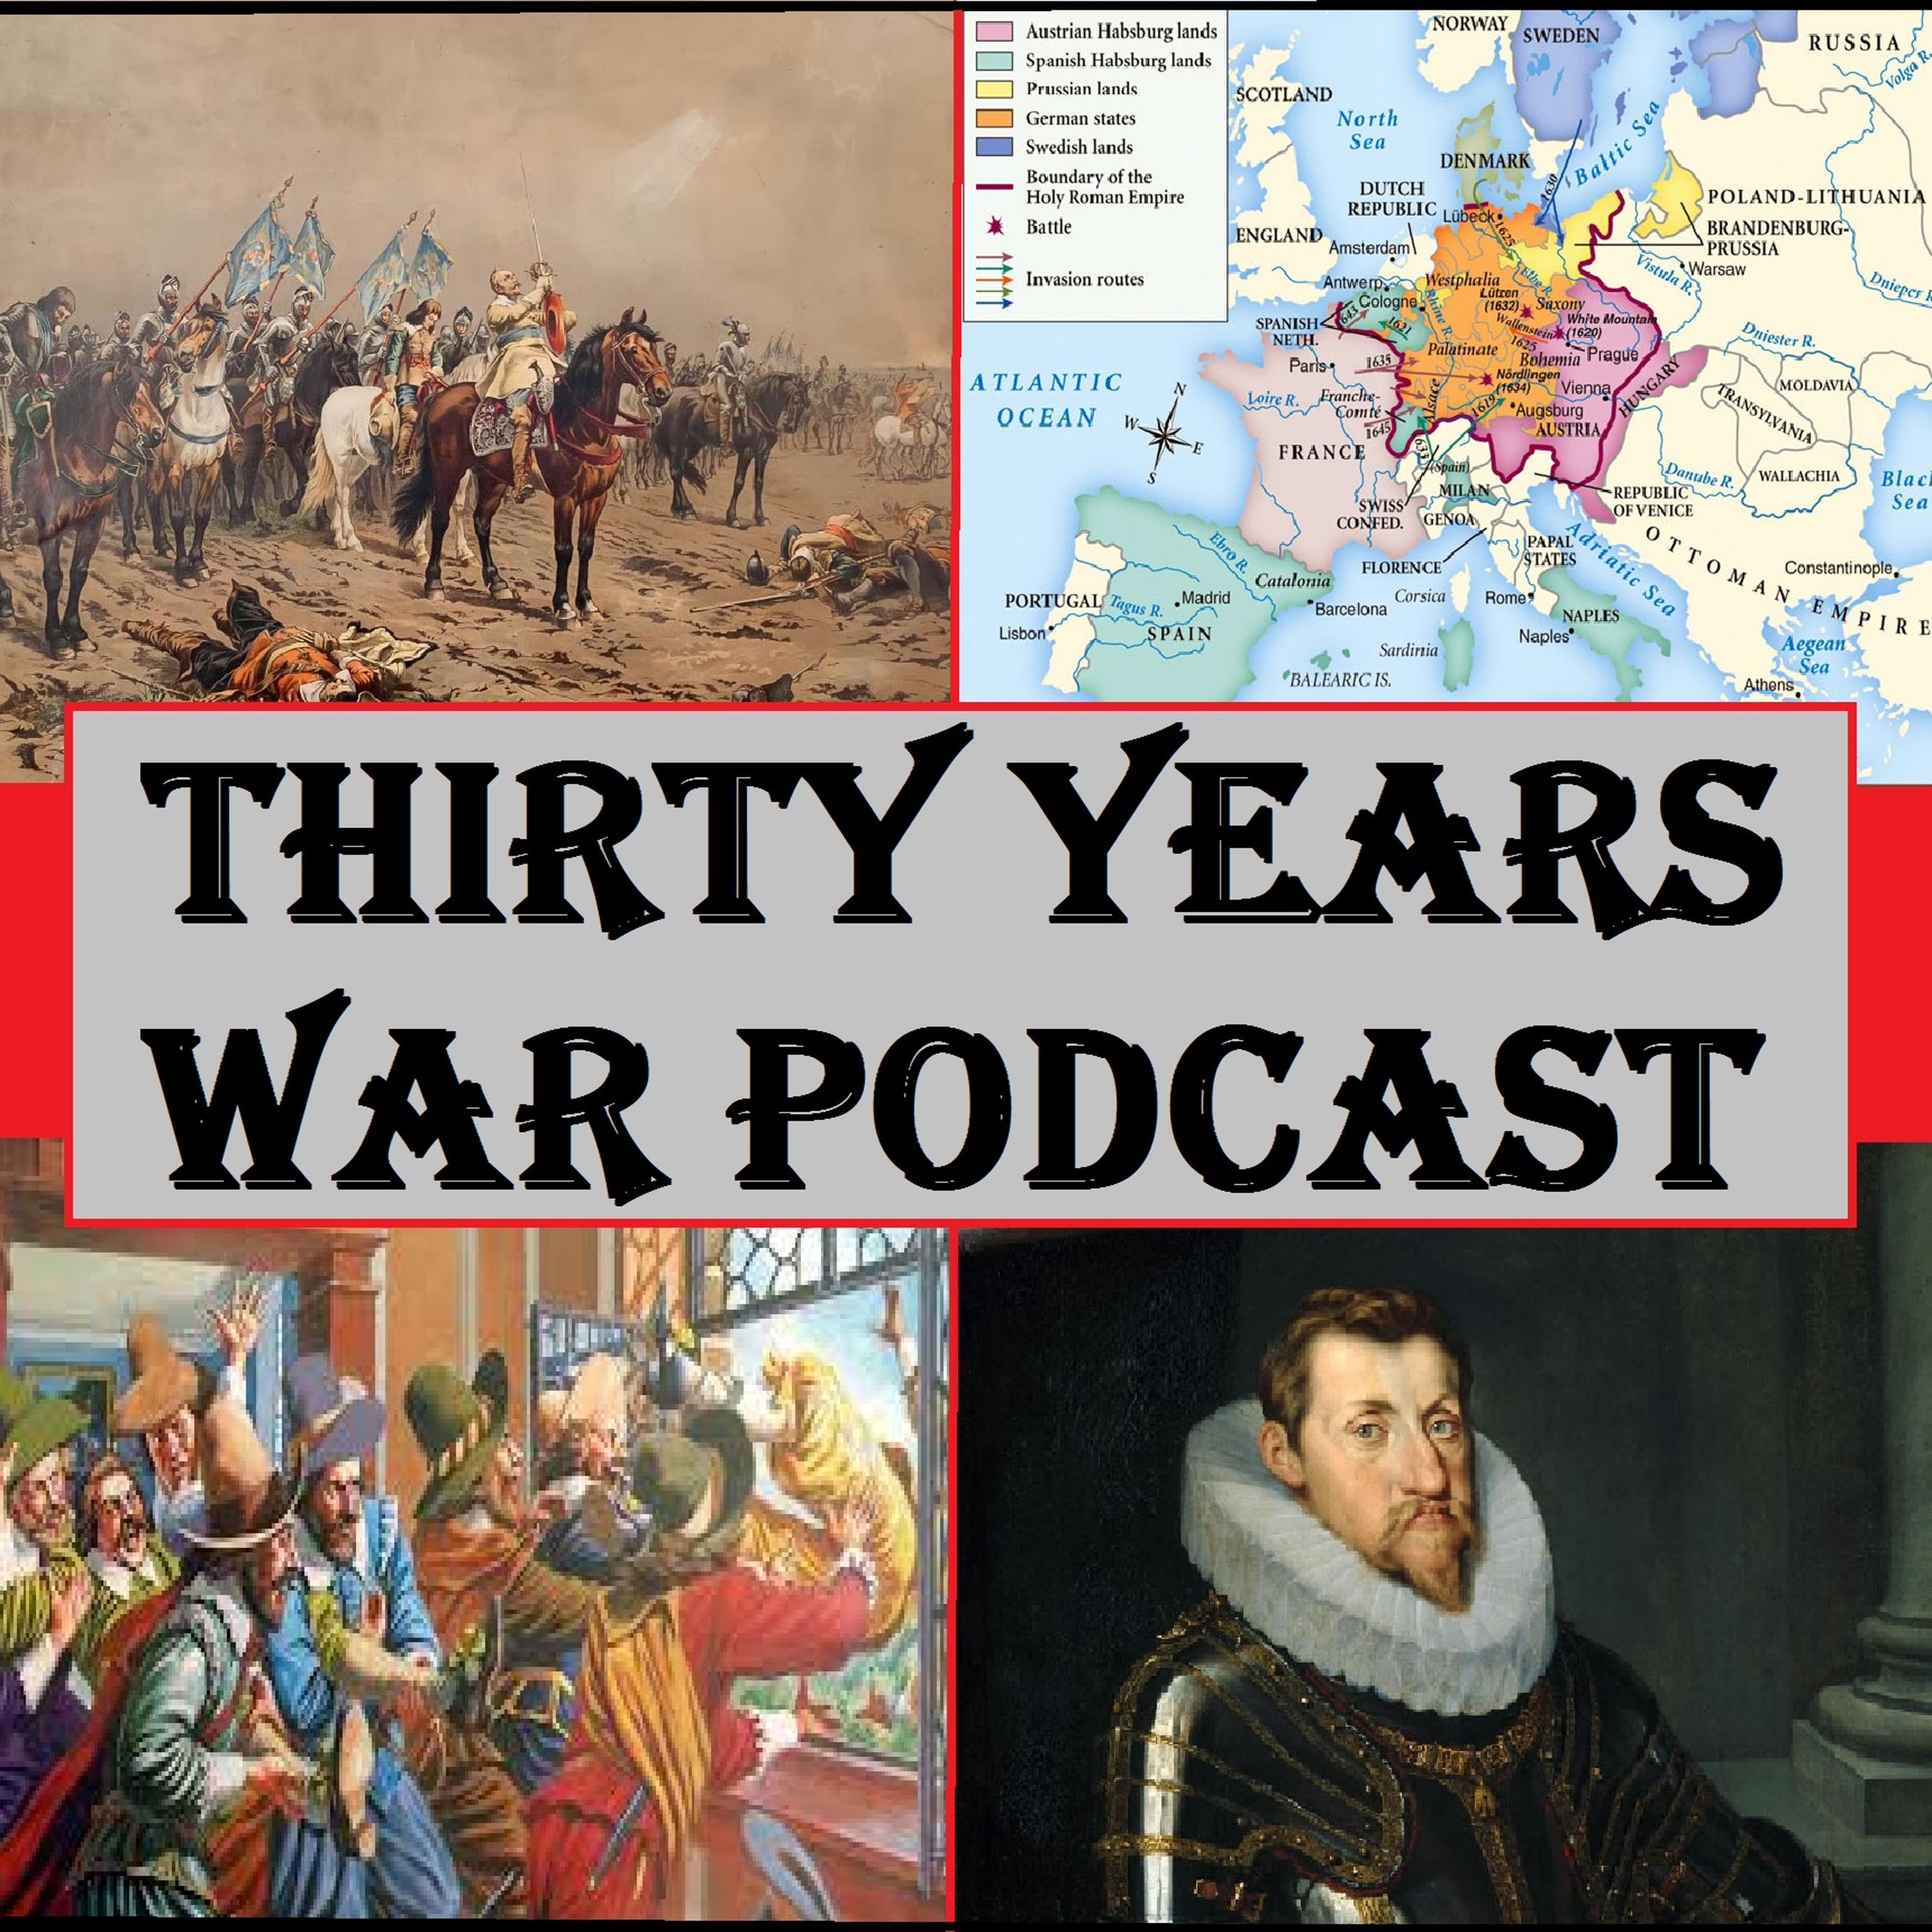 30YearsWar: 17th Century Warfare Episode 5